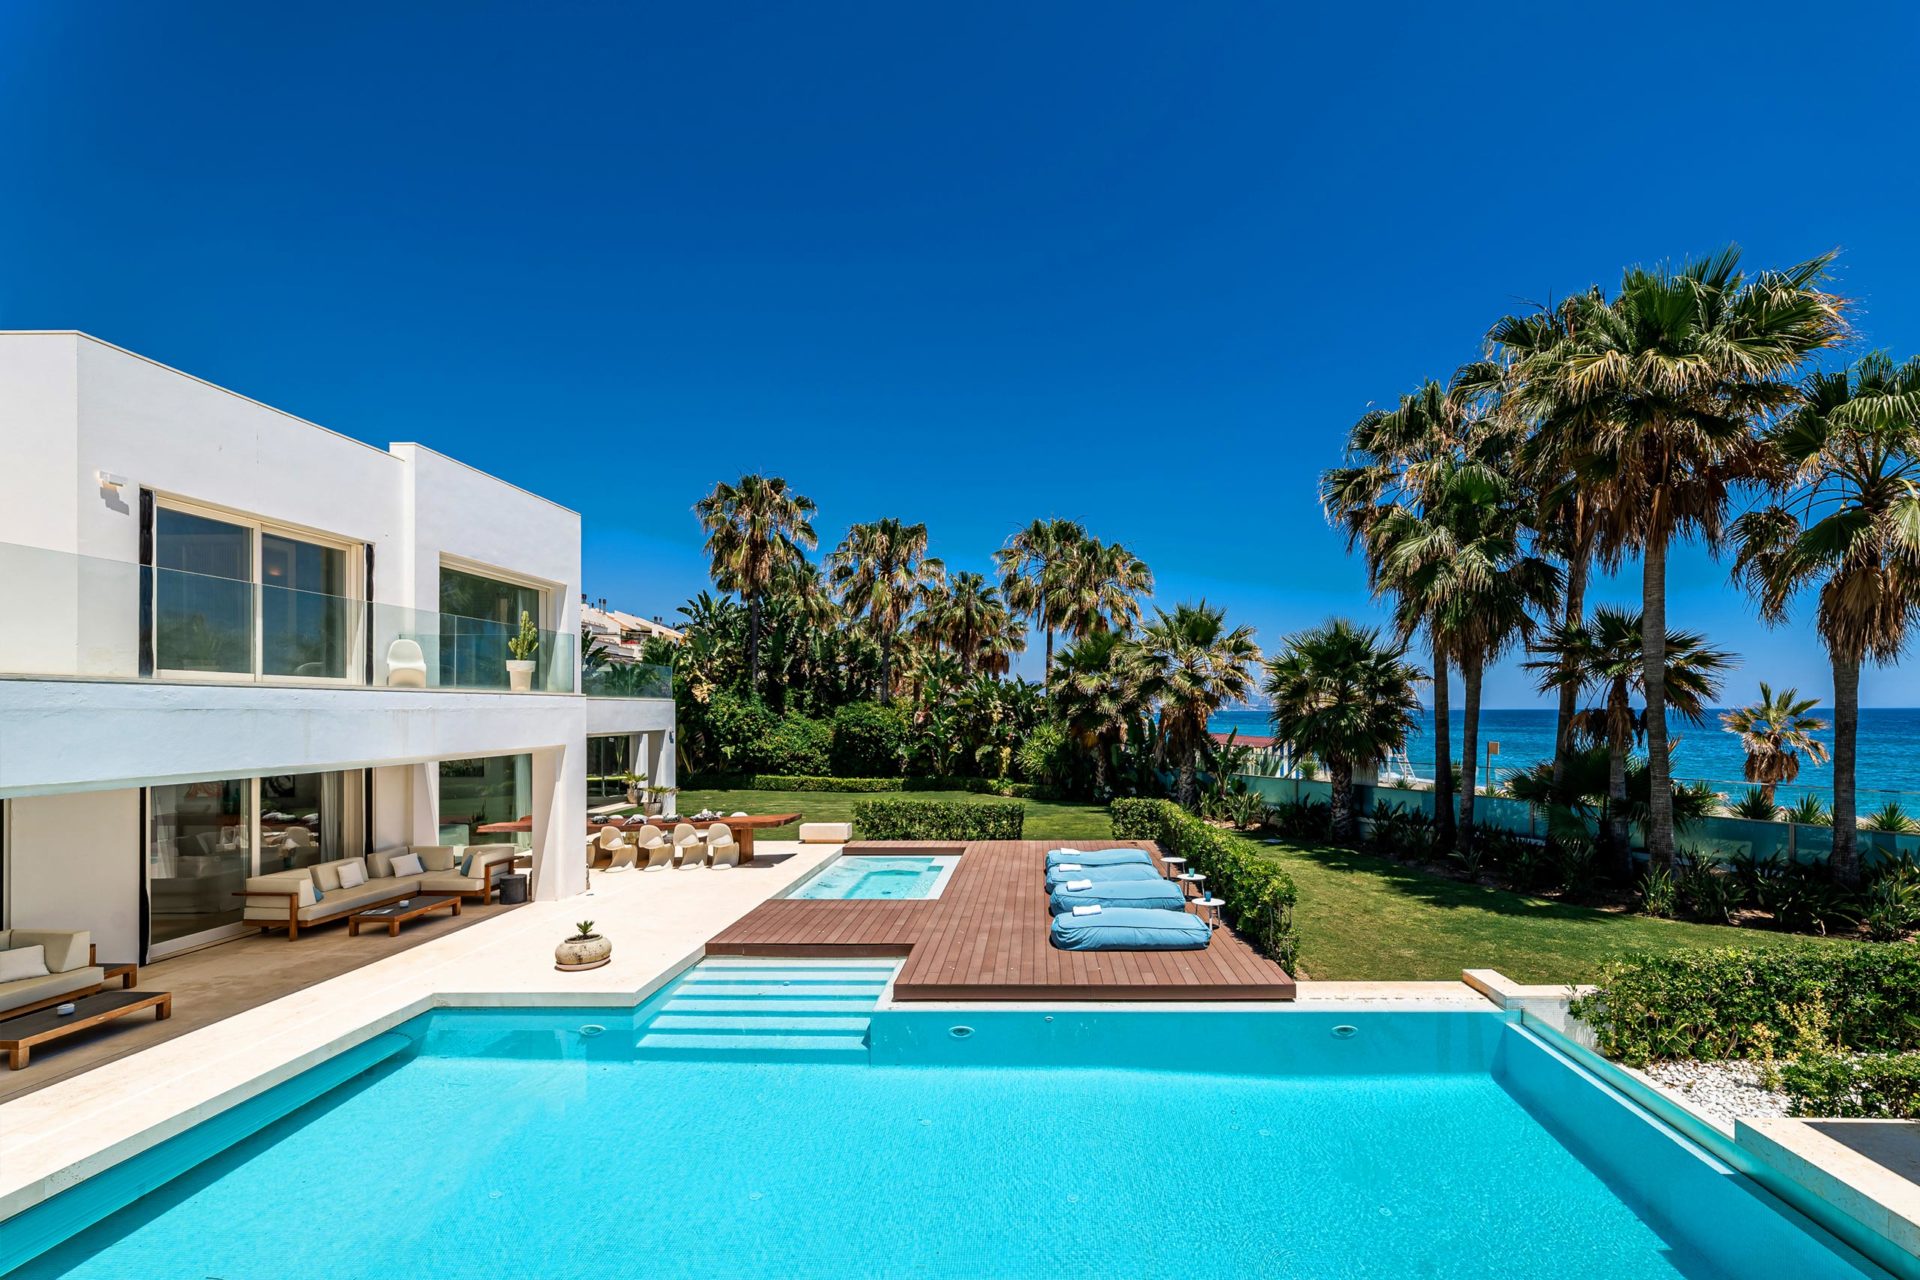 Engel Volkers Marbella Luxury Real Estate Agency In Marbella